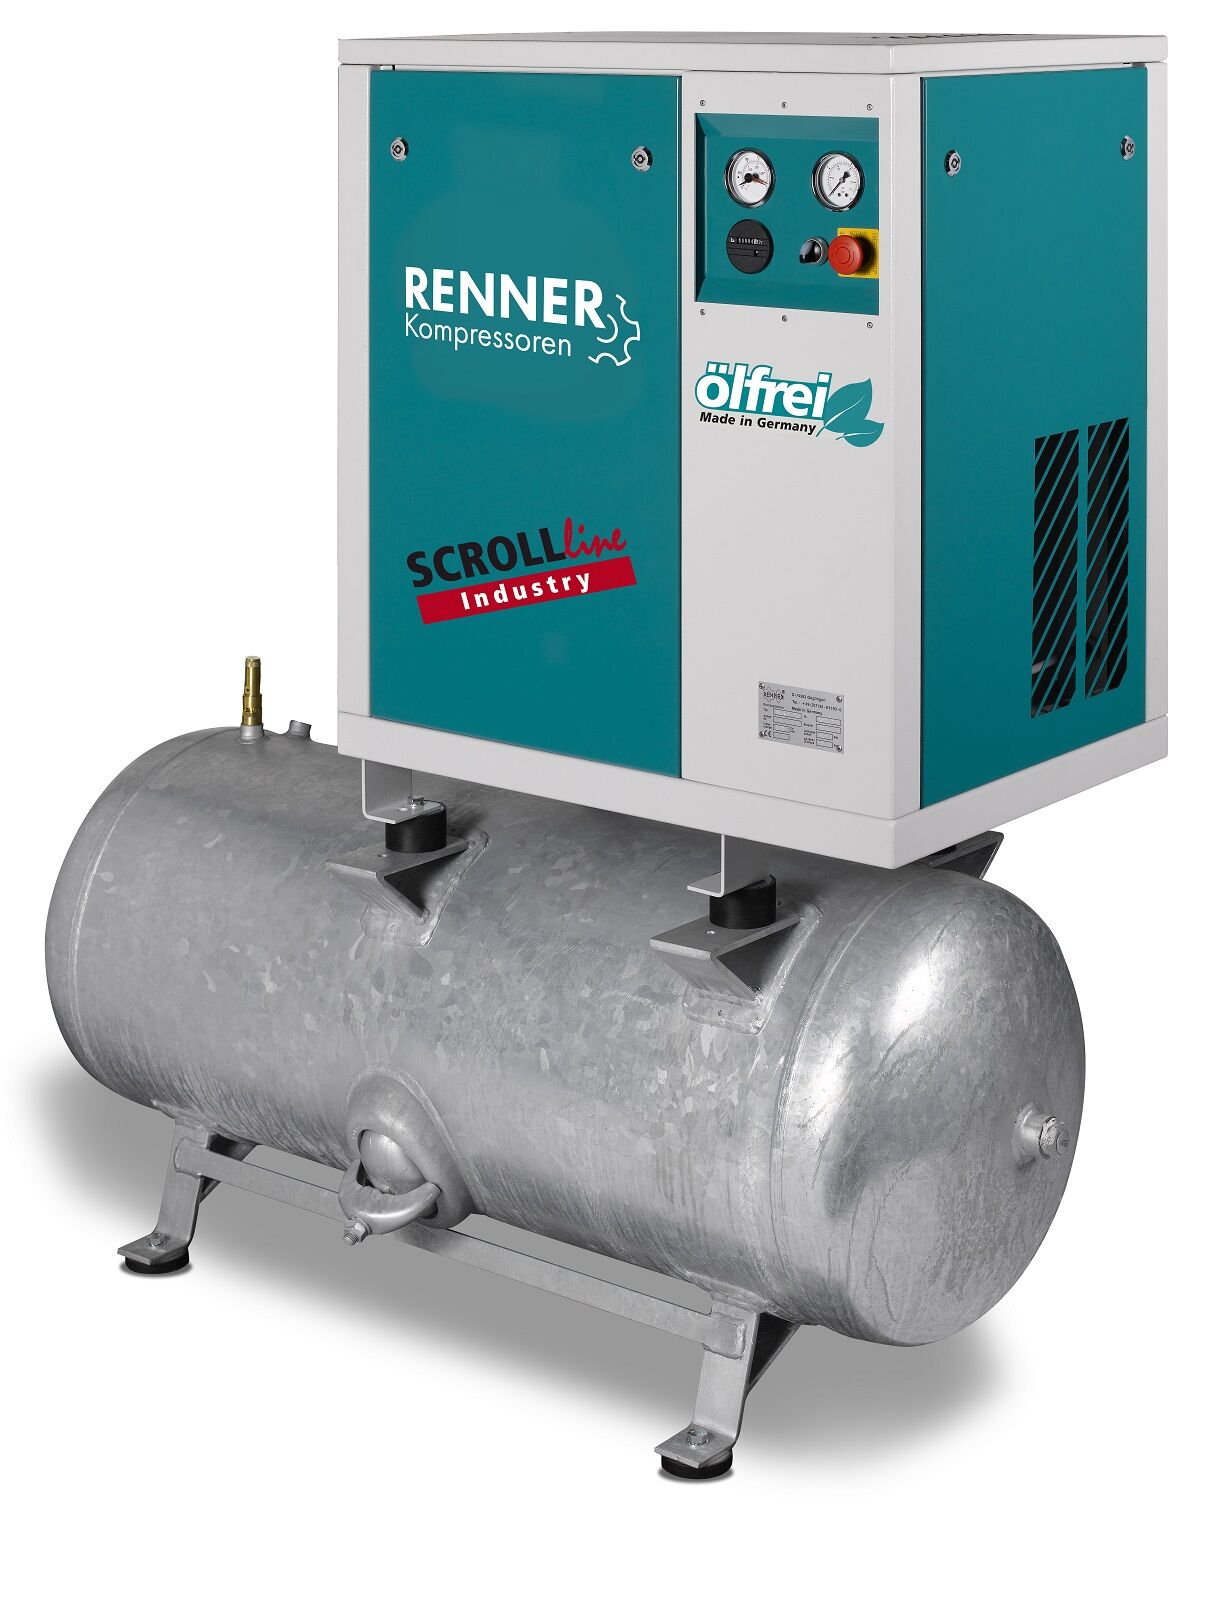 RENNER-Kompressor SLD-I 4,5 auf 250 Liter Druckbehälter - Industry ölfreier Scrollkompressor